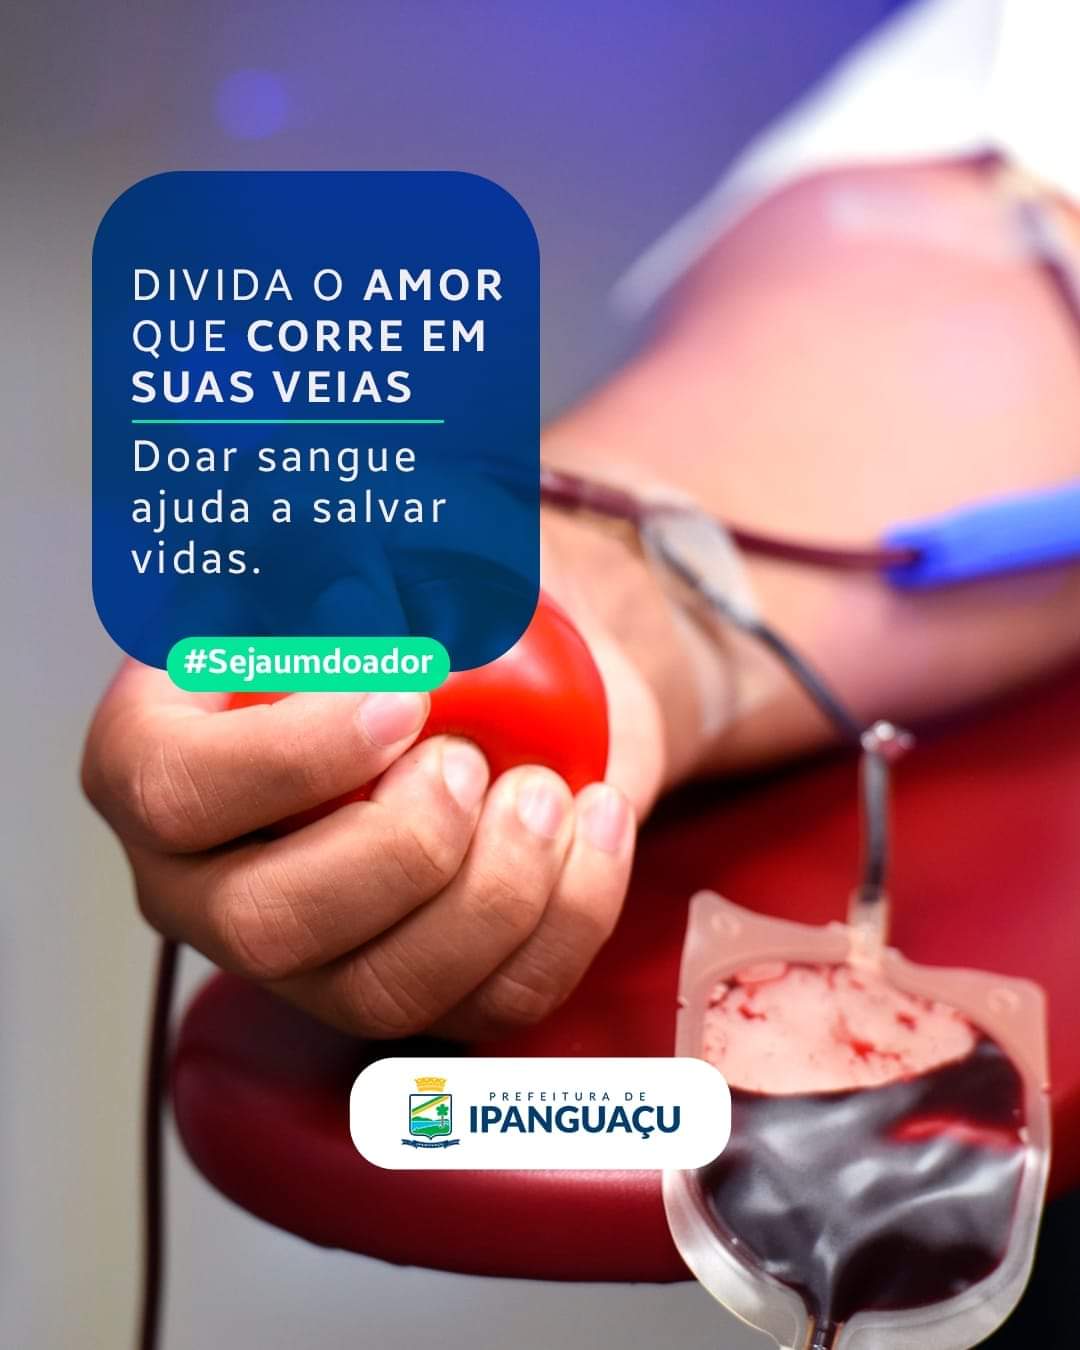 Secretaria de Saúde de Ipanguaçu disponibiliza transporte para estimular doação de sangue